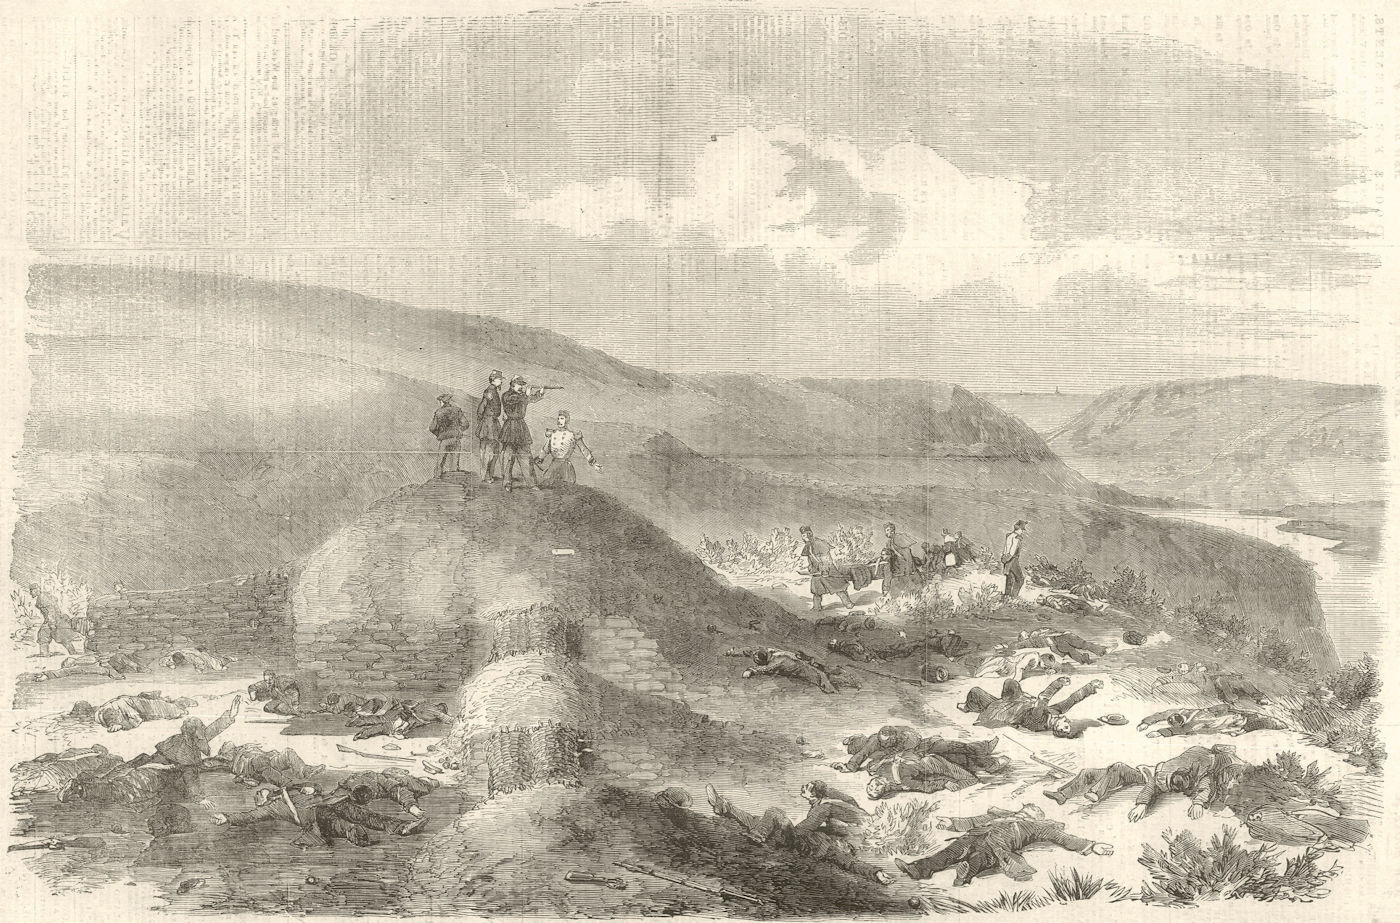 Sandbag battery defended by the Guards, Battle of Inkerman. Crimean War 1854